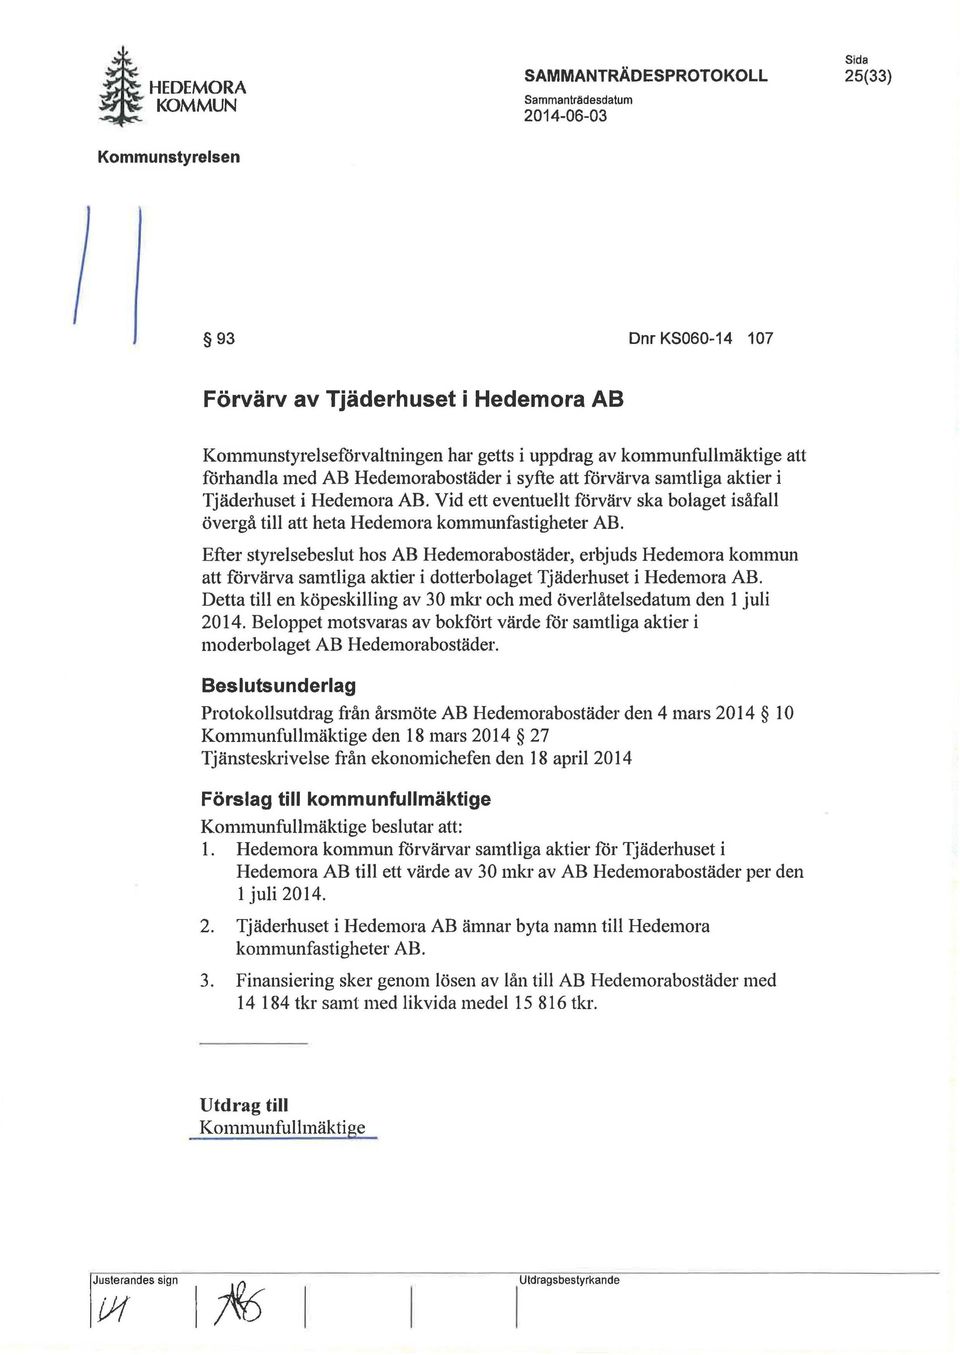 förvärva samtliga aktier i Tjäderhuset i Hedemora AB. Vid ett eventuellt förvärv ska bolaget isåfall övergå till att heta Hedemora kommunfastigheter AB.